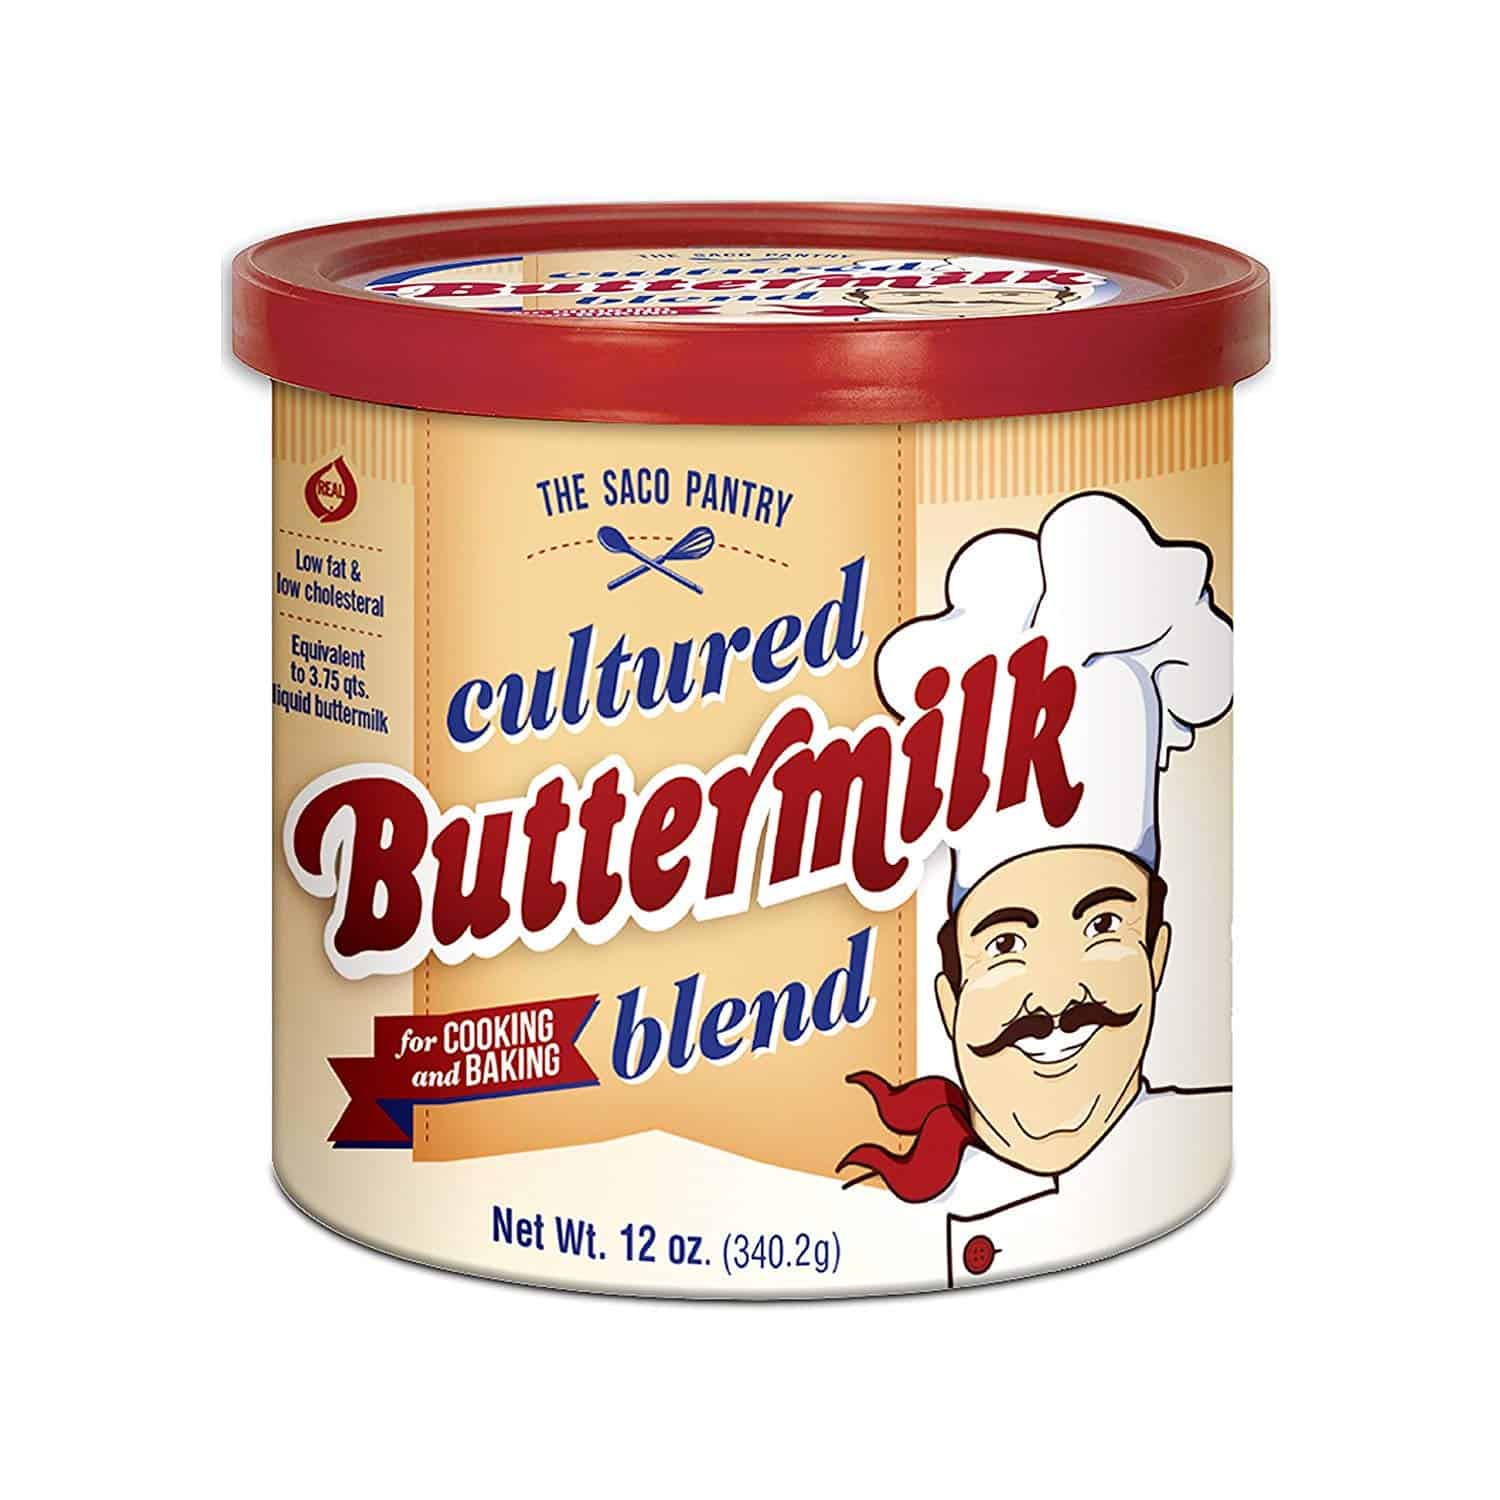 dry cultured buttermilk